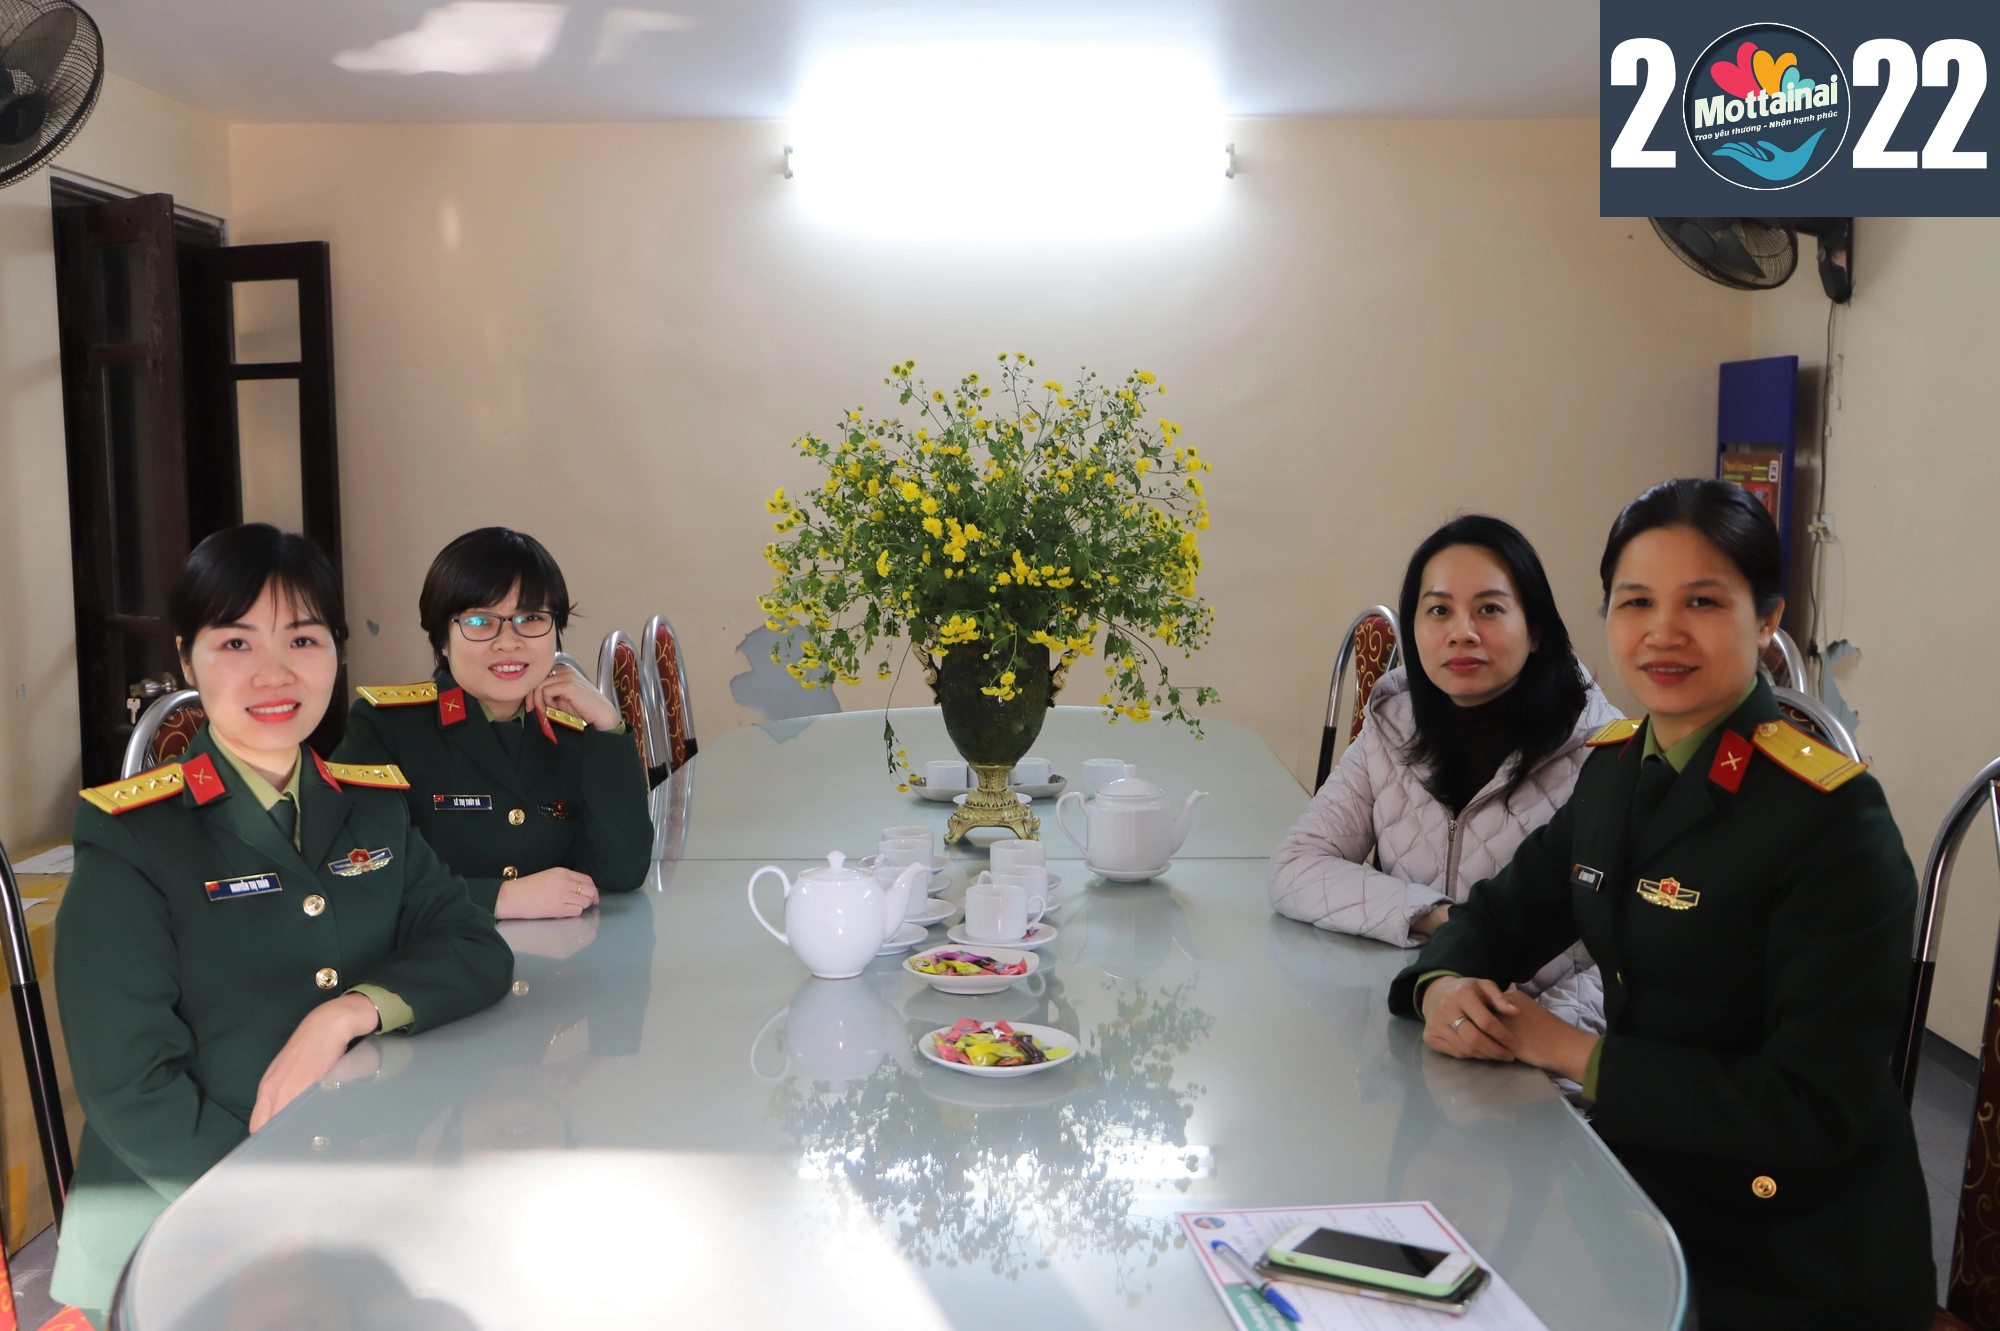 Hội Phụ nữ Báo Quân đội nhân dân chia sẻ yêu thương đến Mottainai 2022 - Ảnh 2.